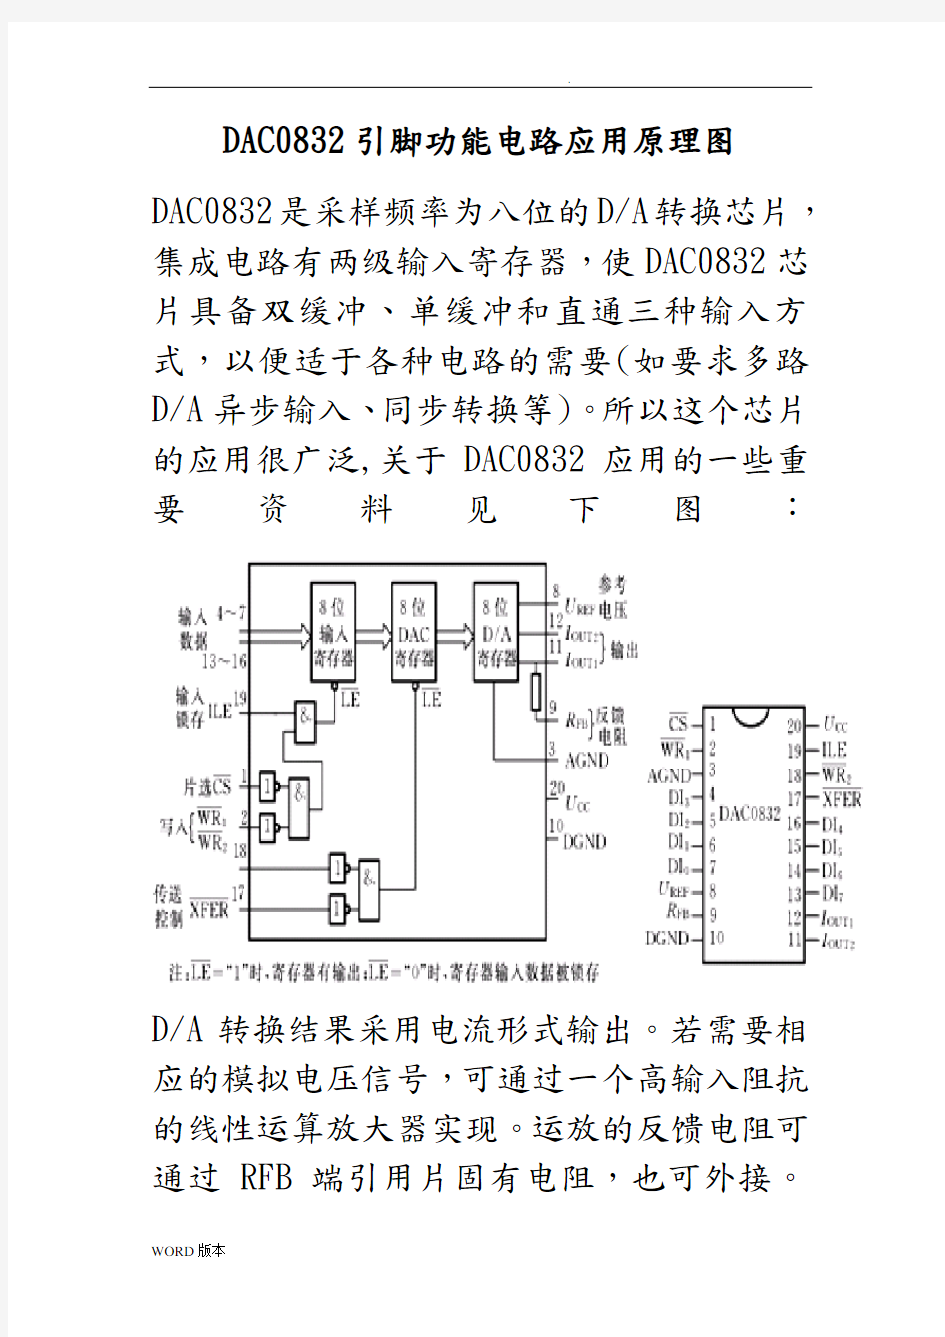 DAC0832中文资料全